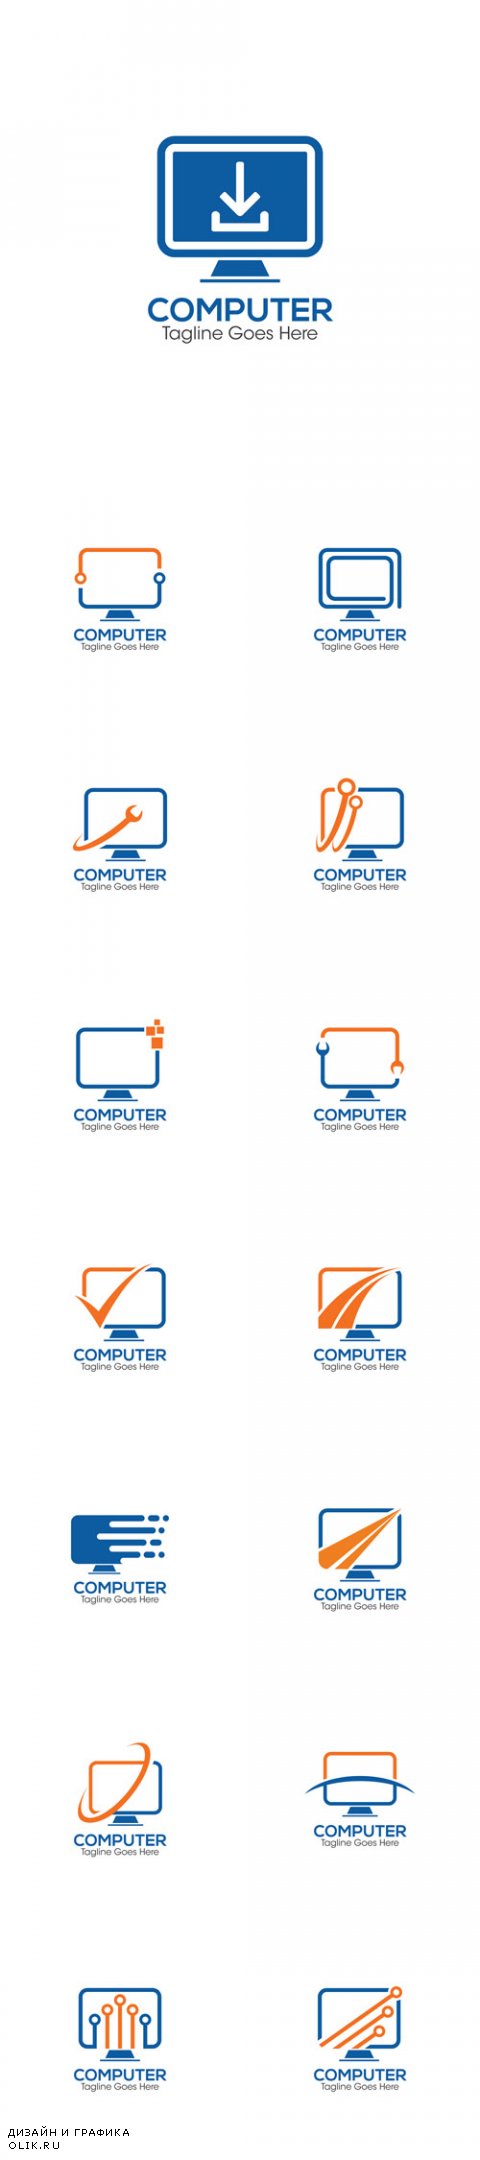 Vector Computer Creative Concept Logo Design Templates